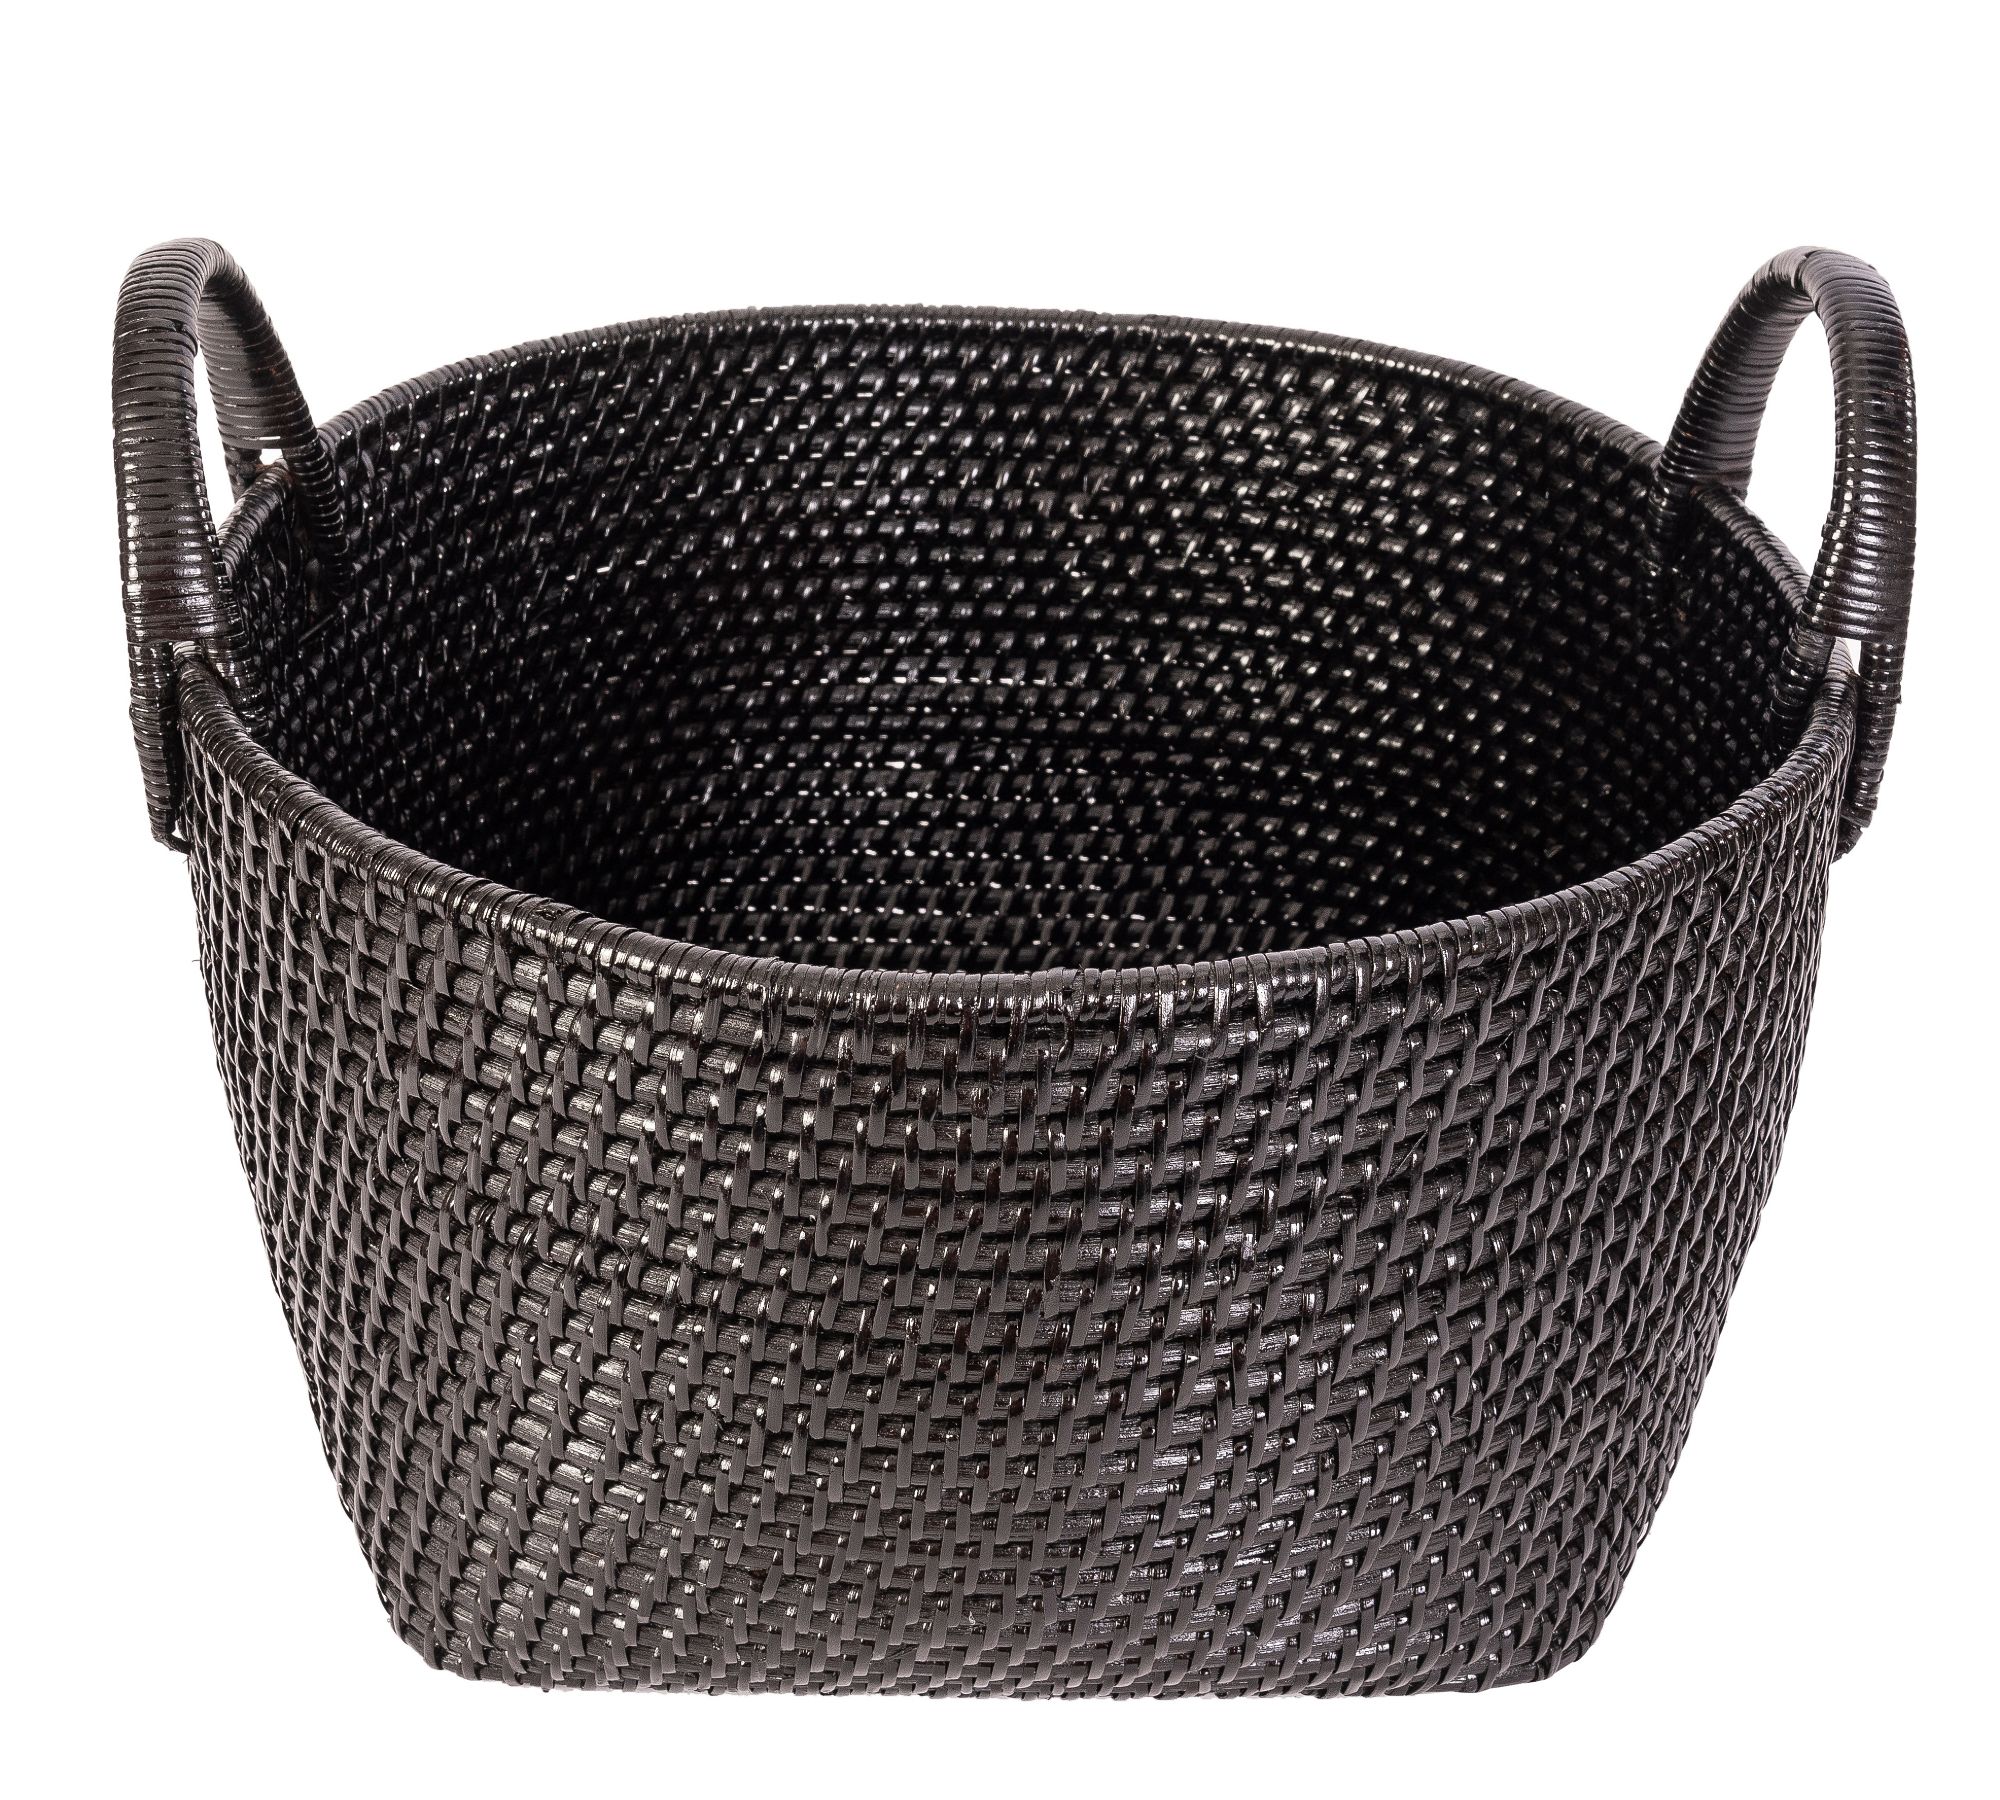 Tava Handwoven Rattan Round Basket With Hoop Handles